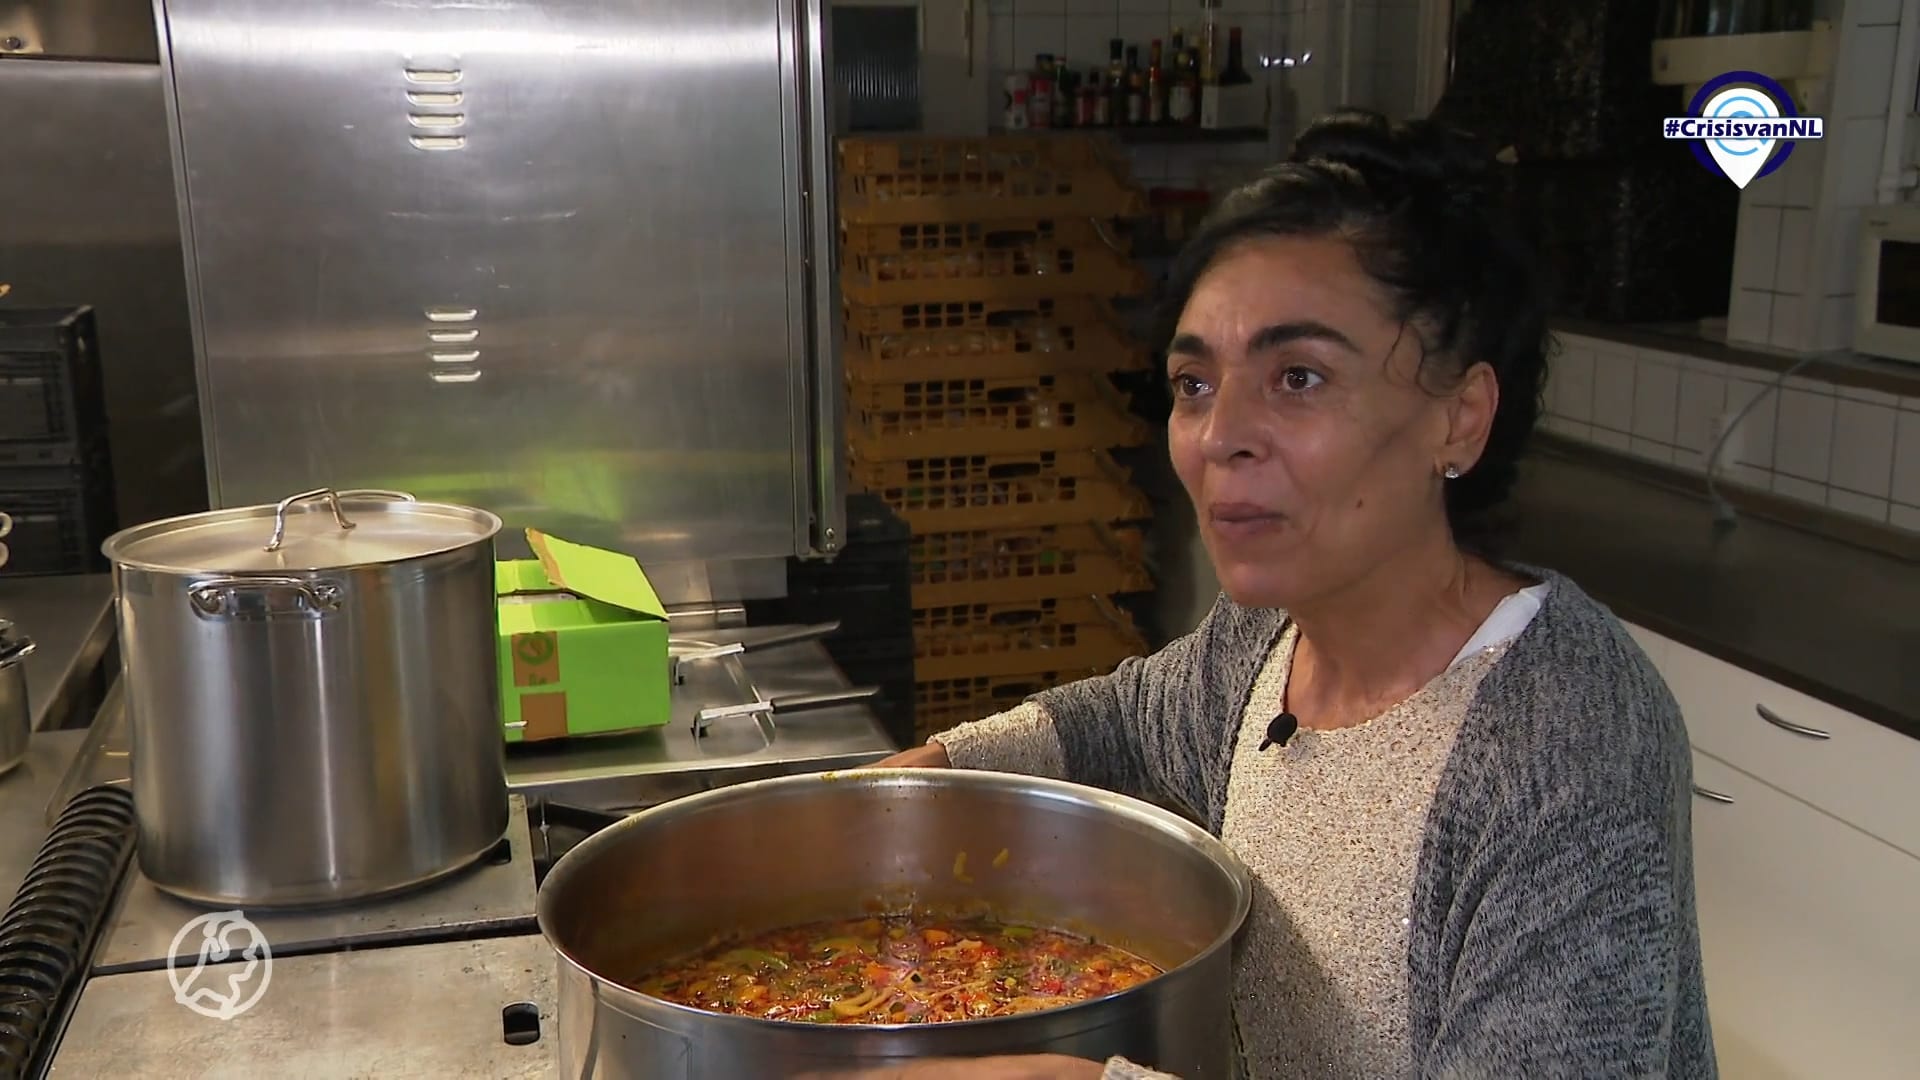 #CrisisvanNL | Hülya geeft mensen die het niet meer kunnen betalen toch te eten